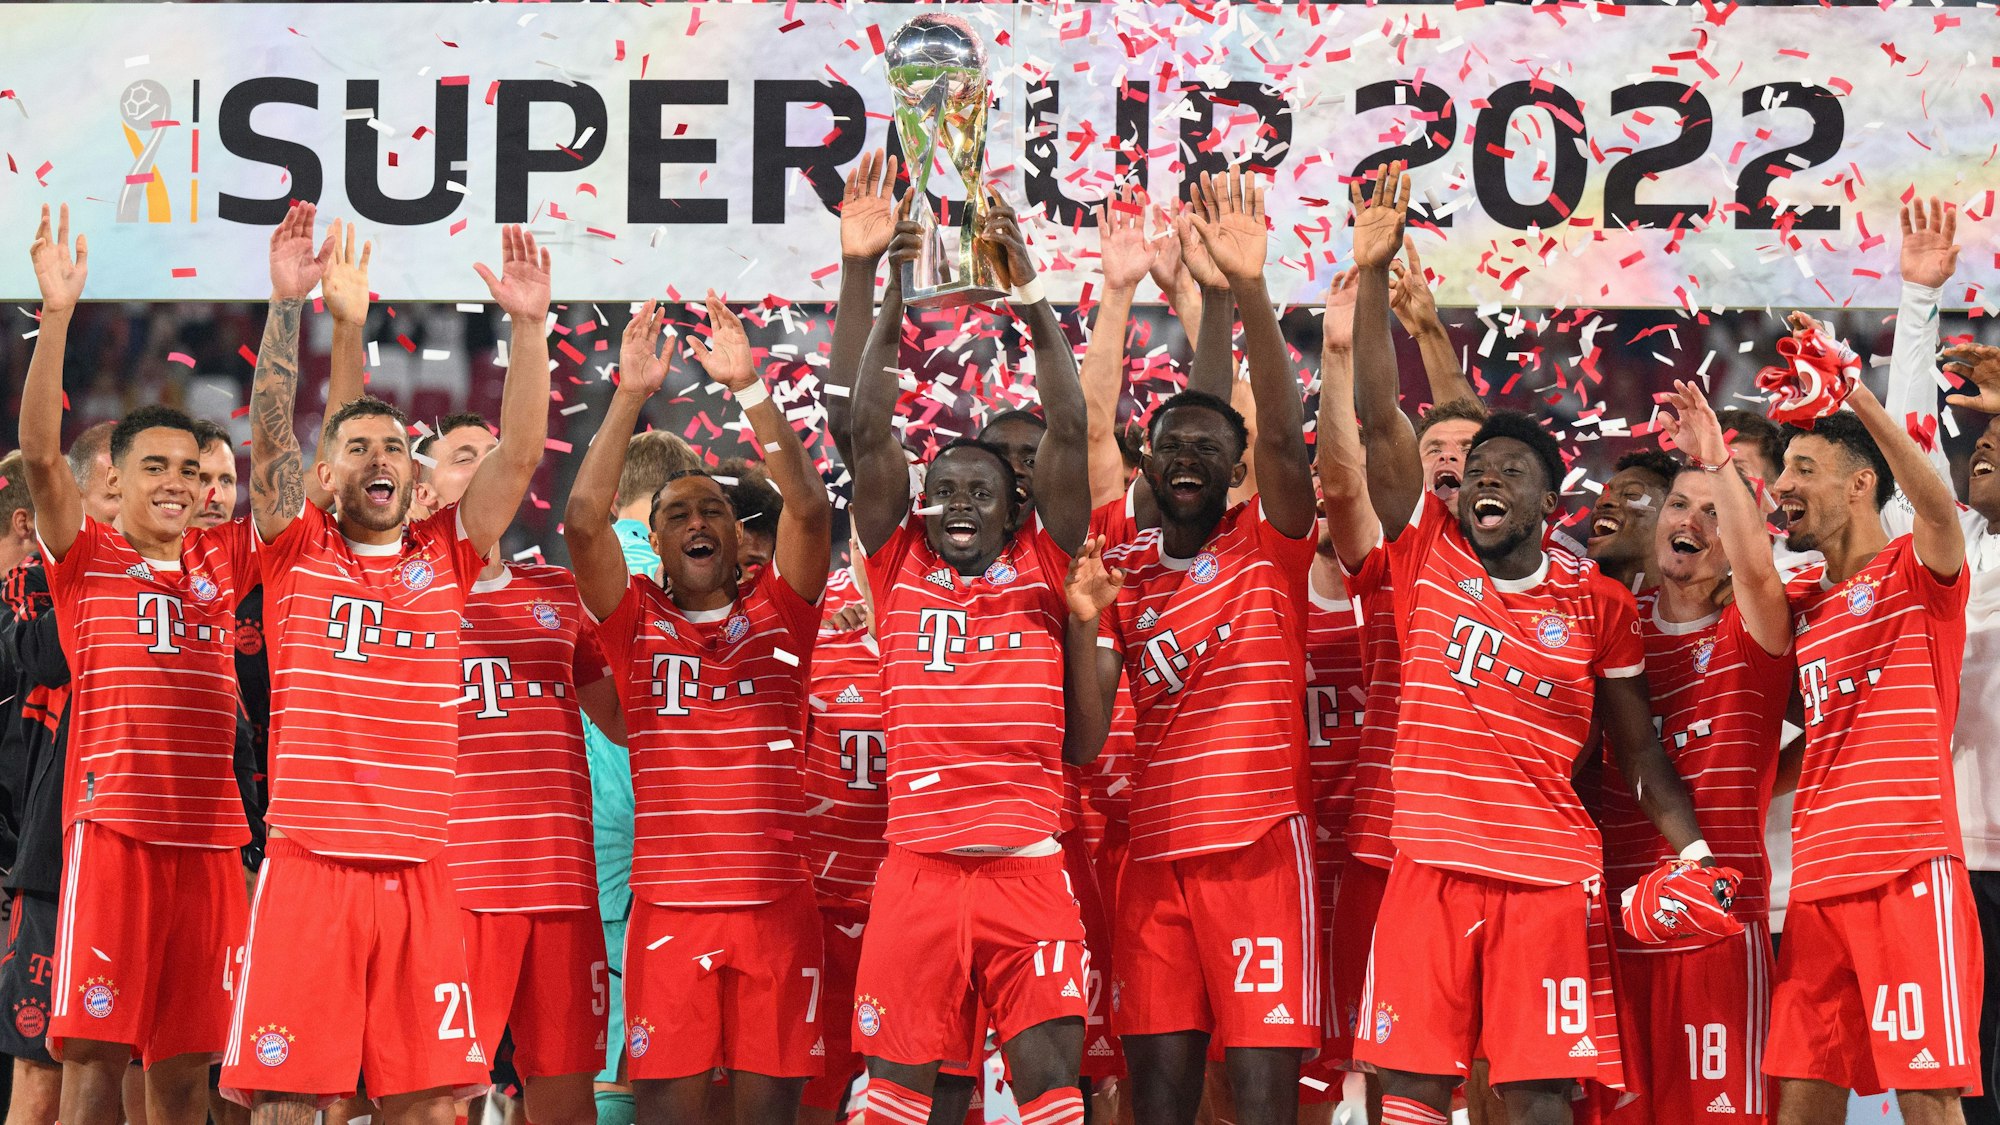 Der FC Bayern München feiert den Gewinn des Supercup über RB Leipzig.